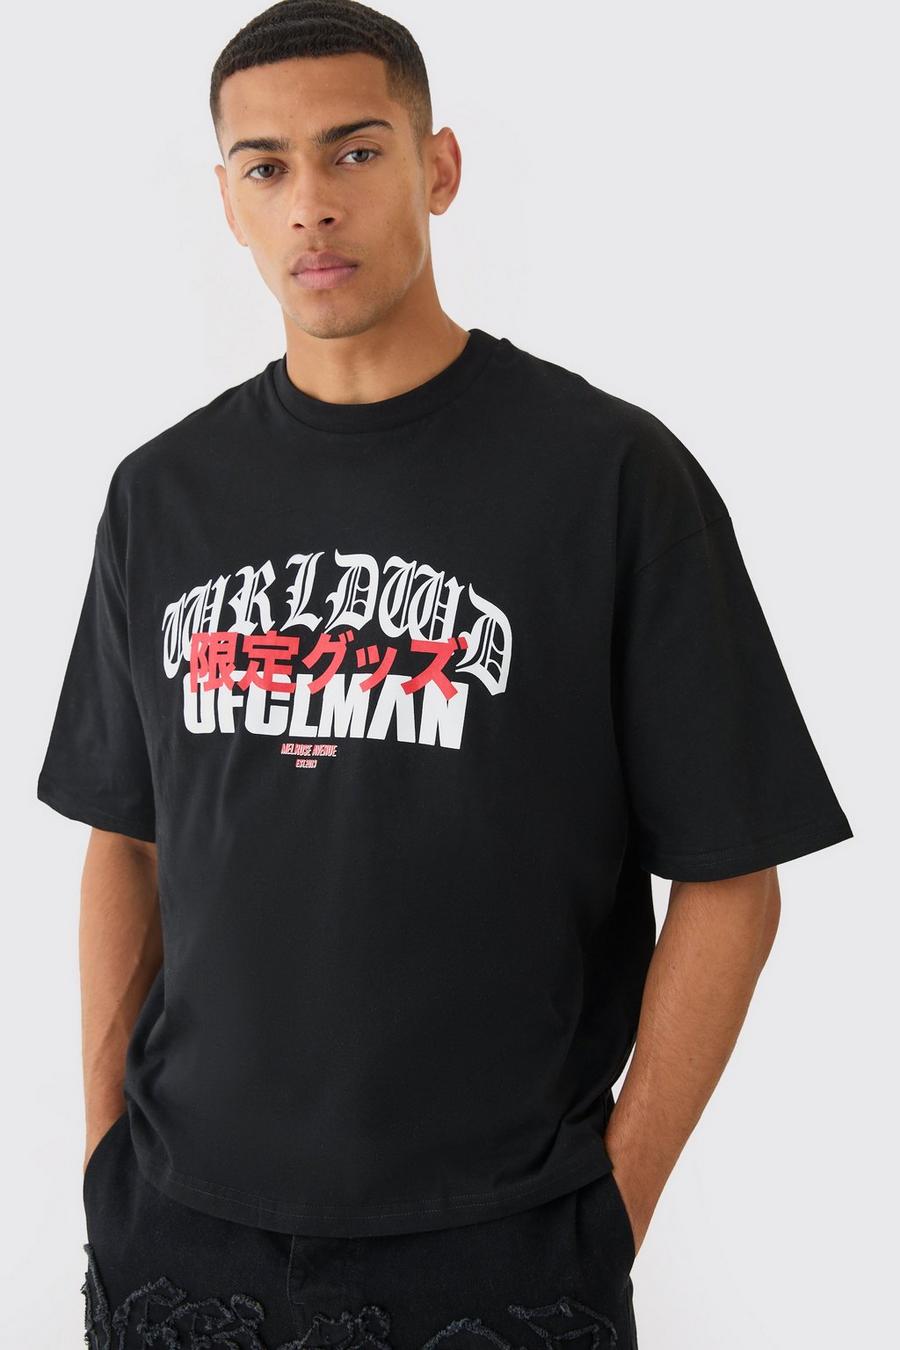 Black schwarz Oversized Boxy Ofcl Man T-shirt